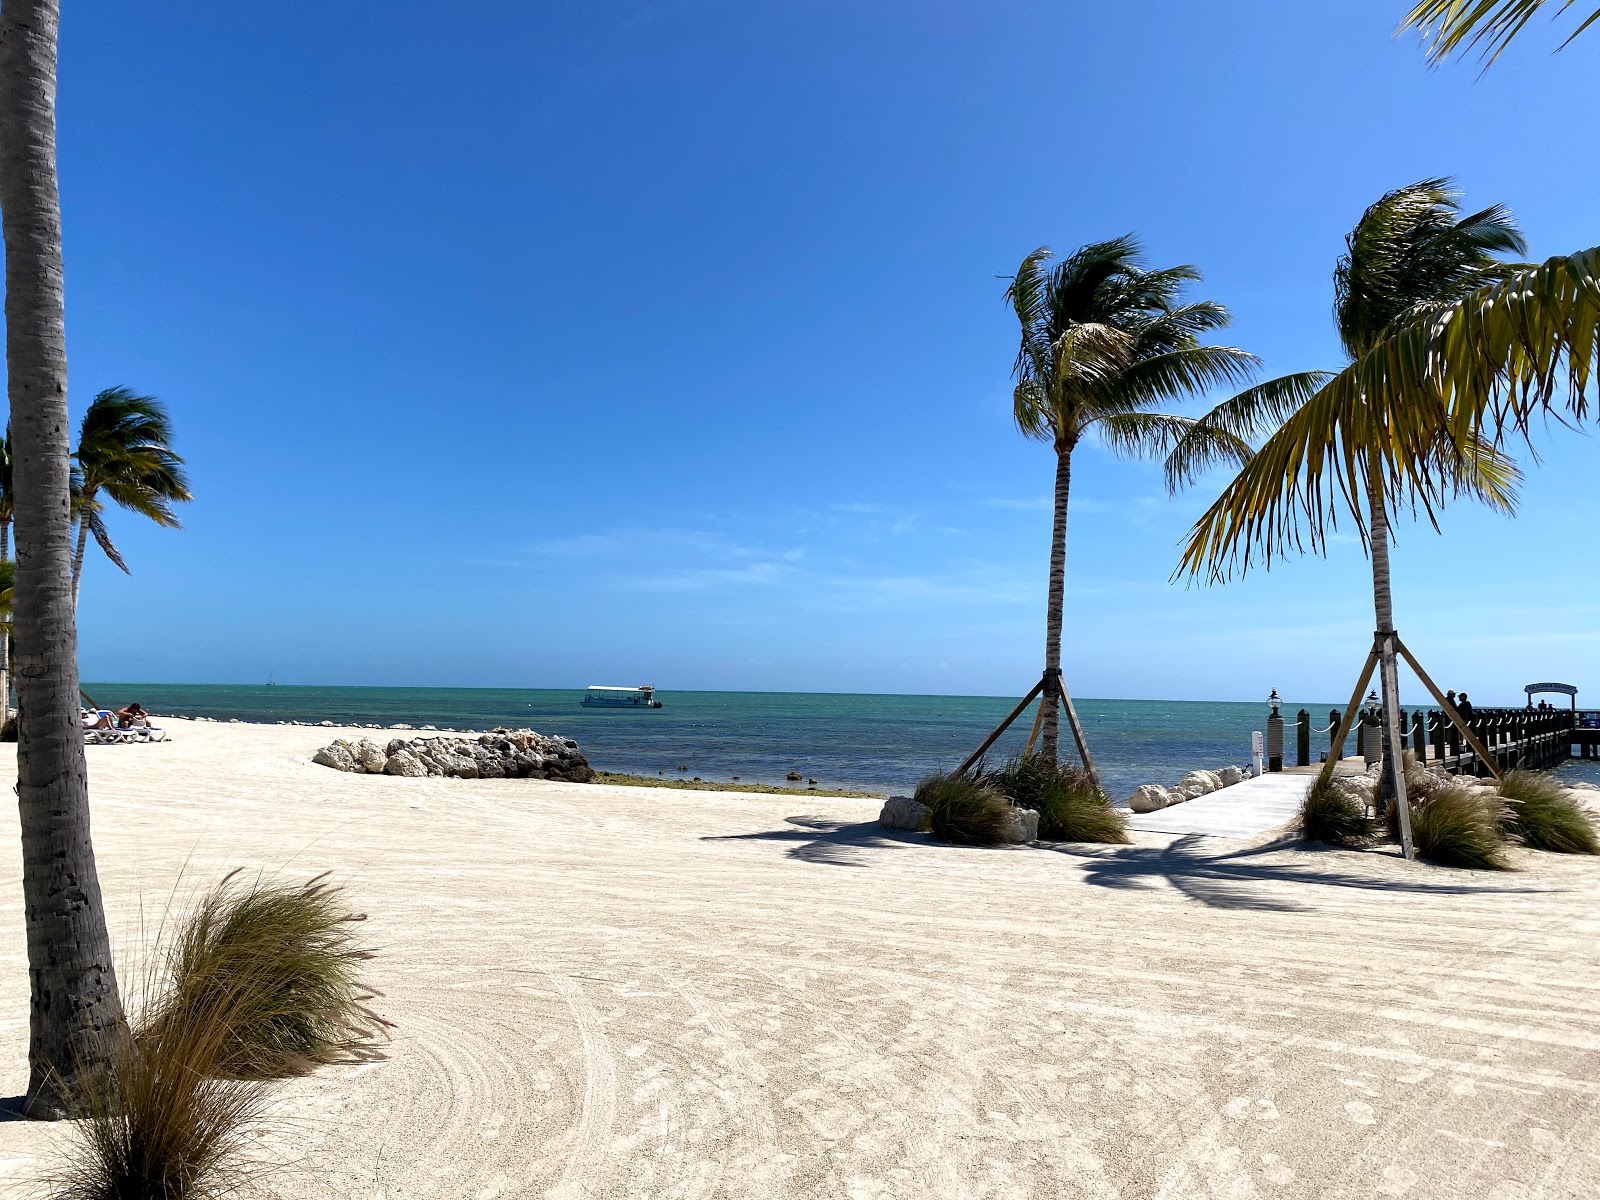 Foto de Islander beach - lugar popular entre los conocedores del relax